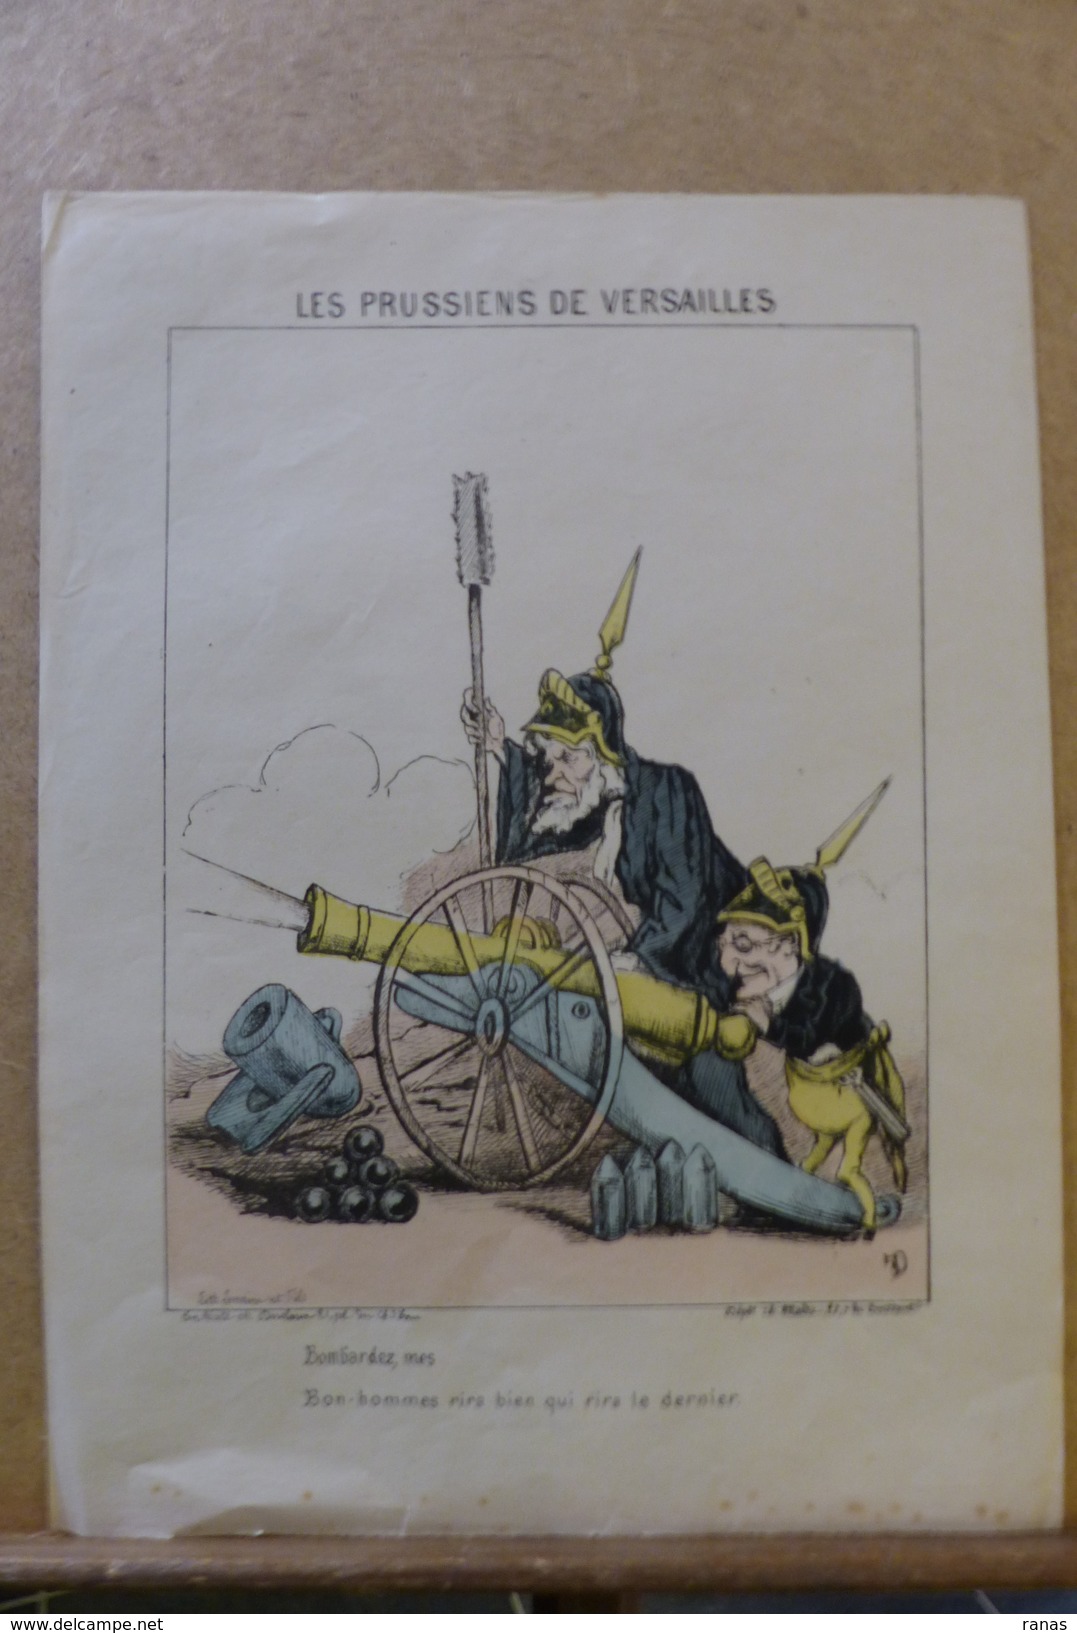 Estampe Gravure Satirique Caricature D'époque 1870  La Commune De Paris Auguste THIERS FAVRE 32,5 X 24,5 - Prints & Engravings